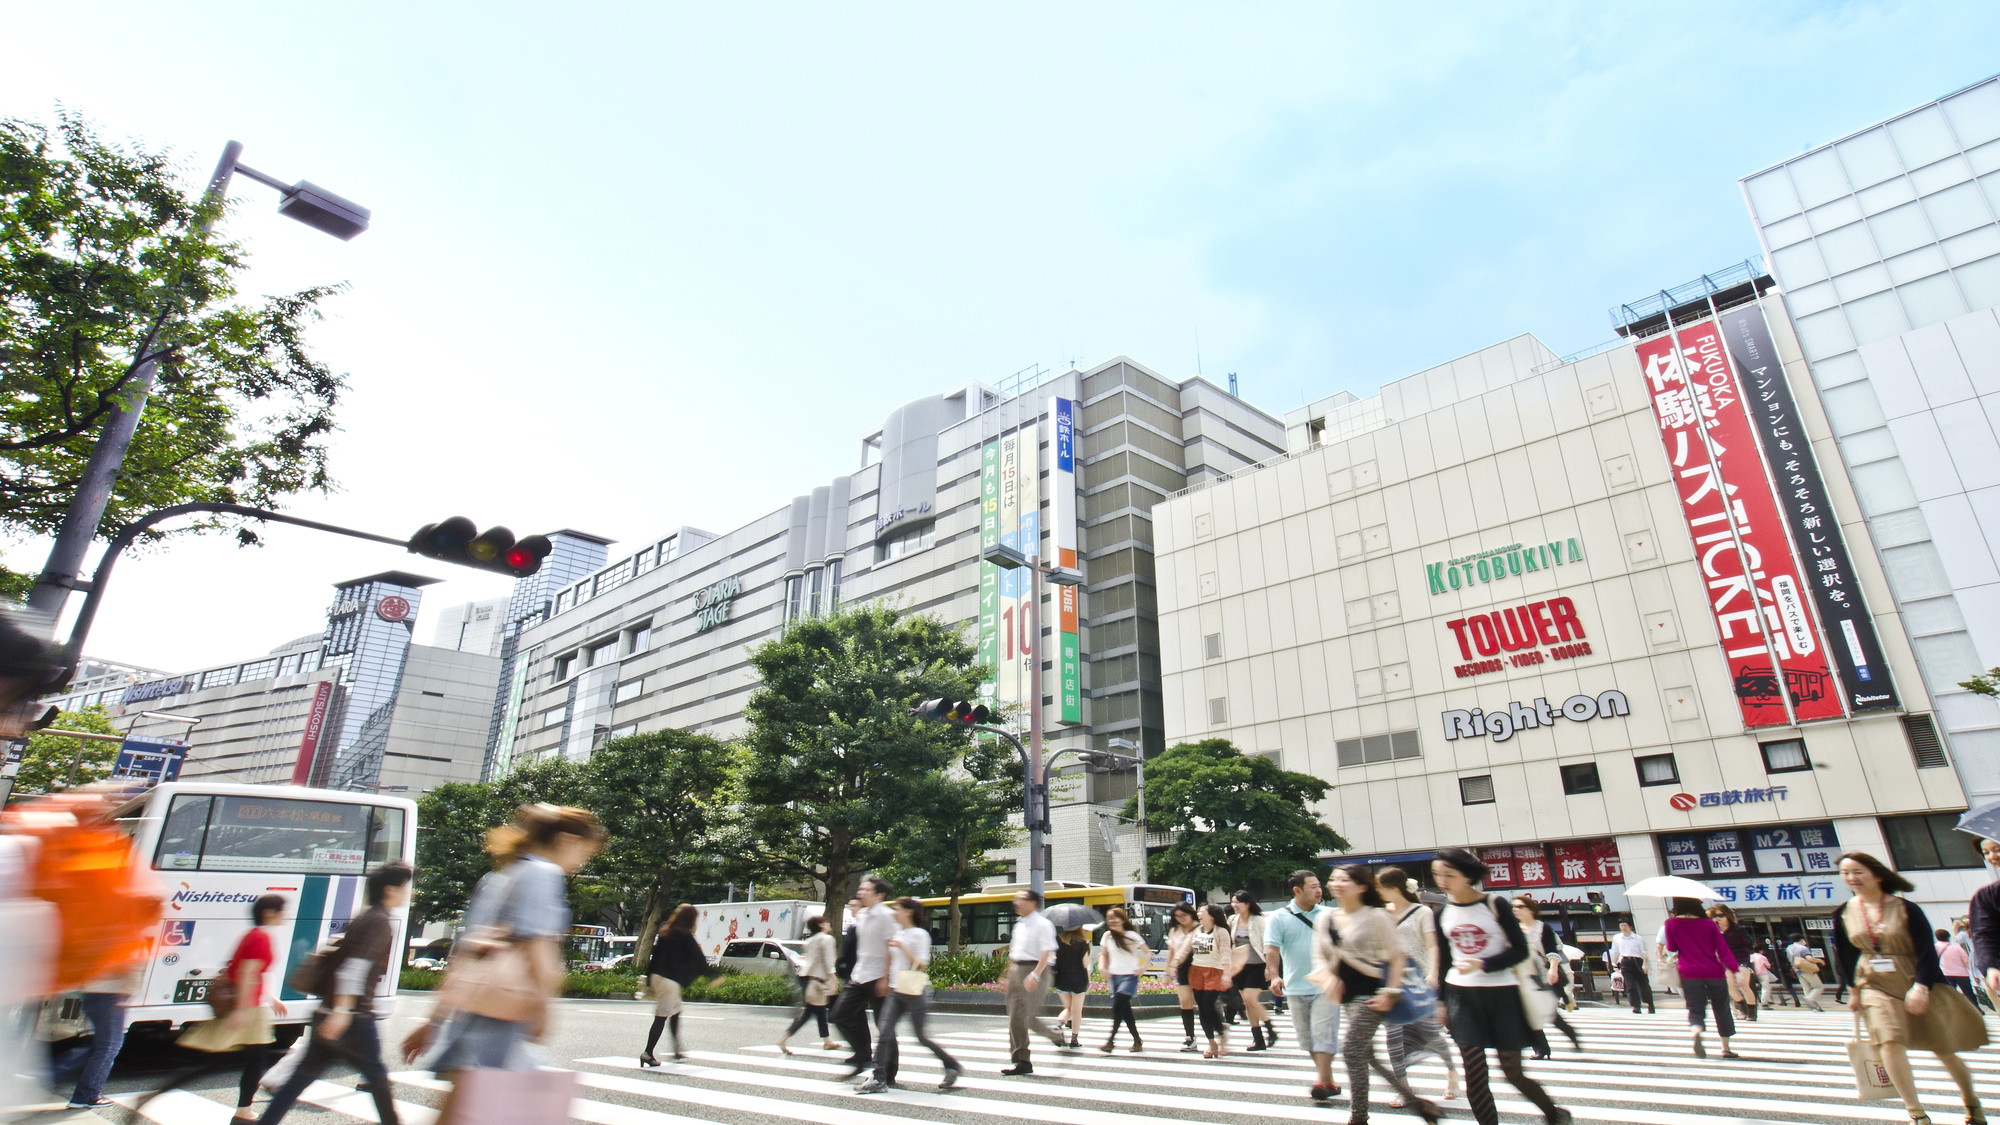 天神地区 ファッション、文化、食と全てが集まる、福岡の中心地。地下鉄で約5分